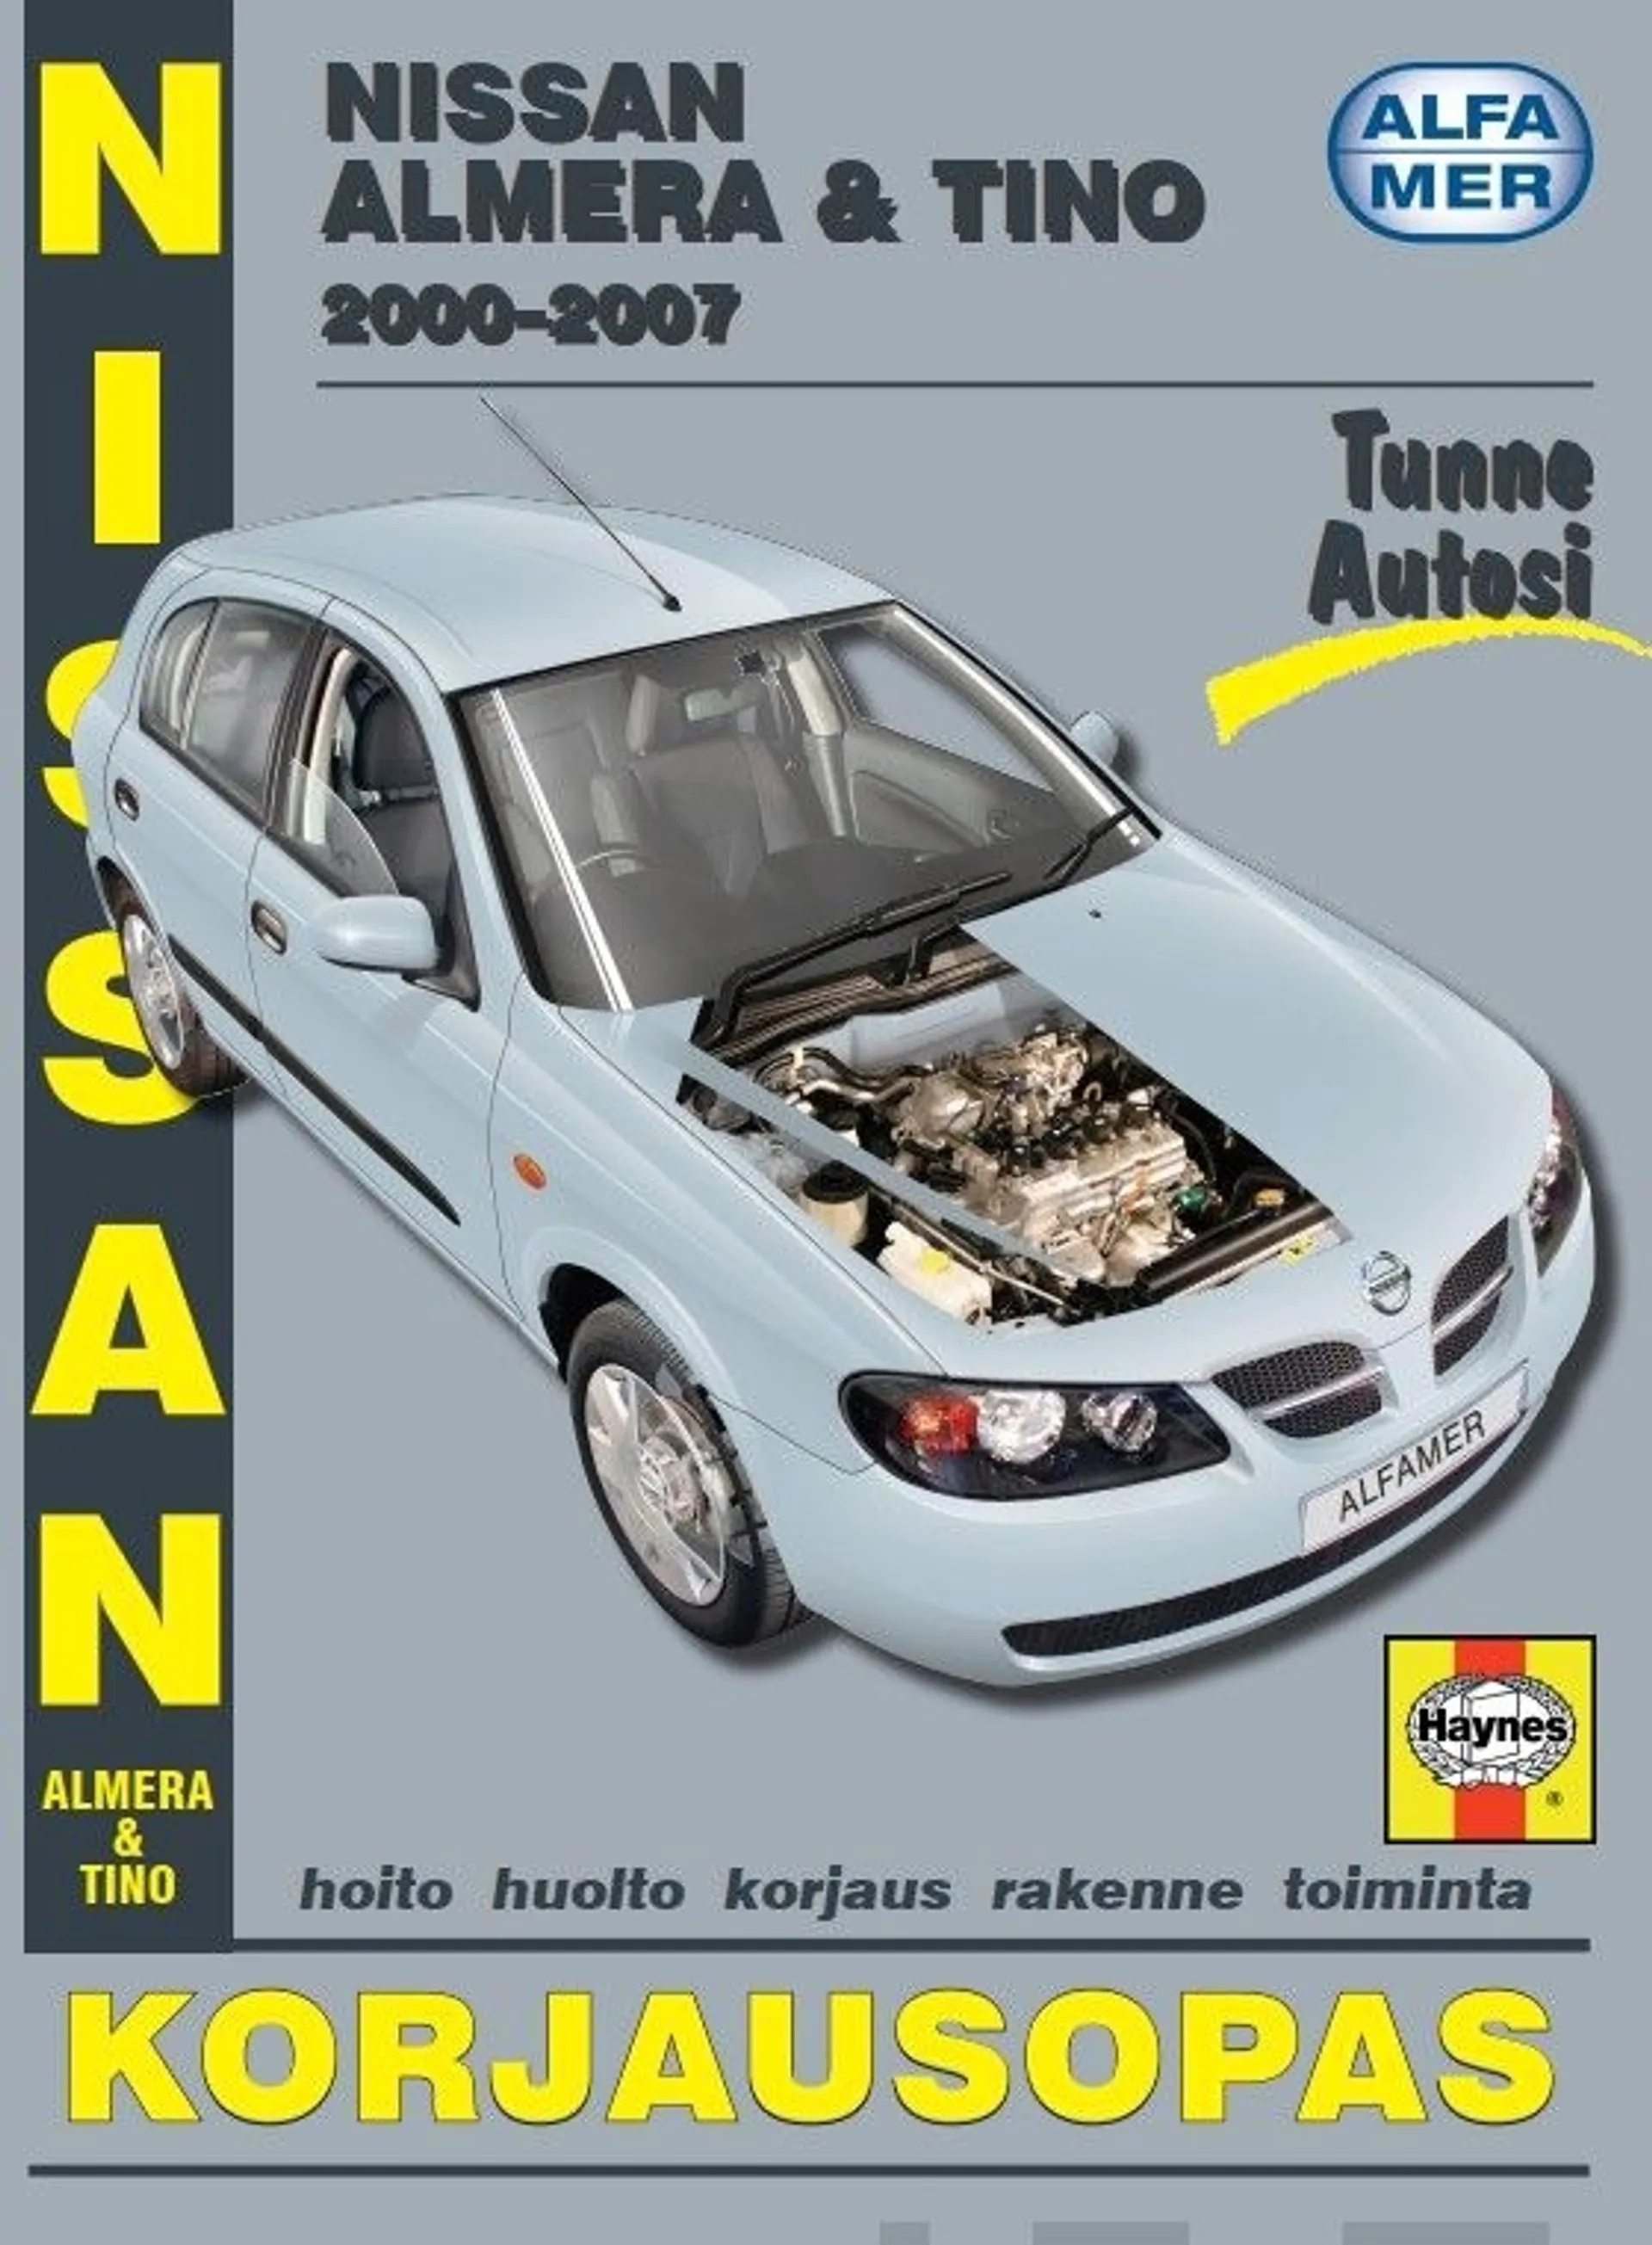 Mauno, Nissan Almera & Tino 2000-2007 - Korjausopas